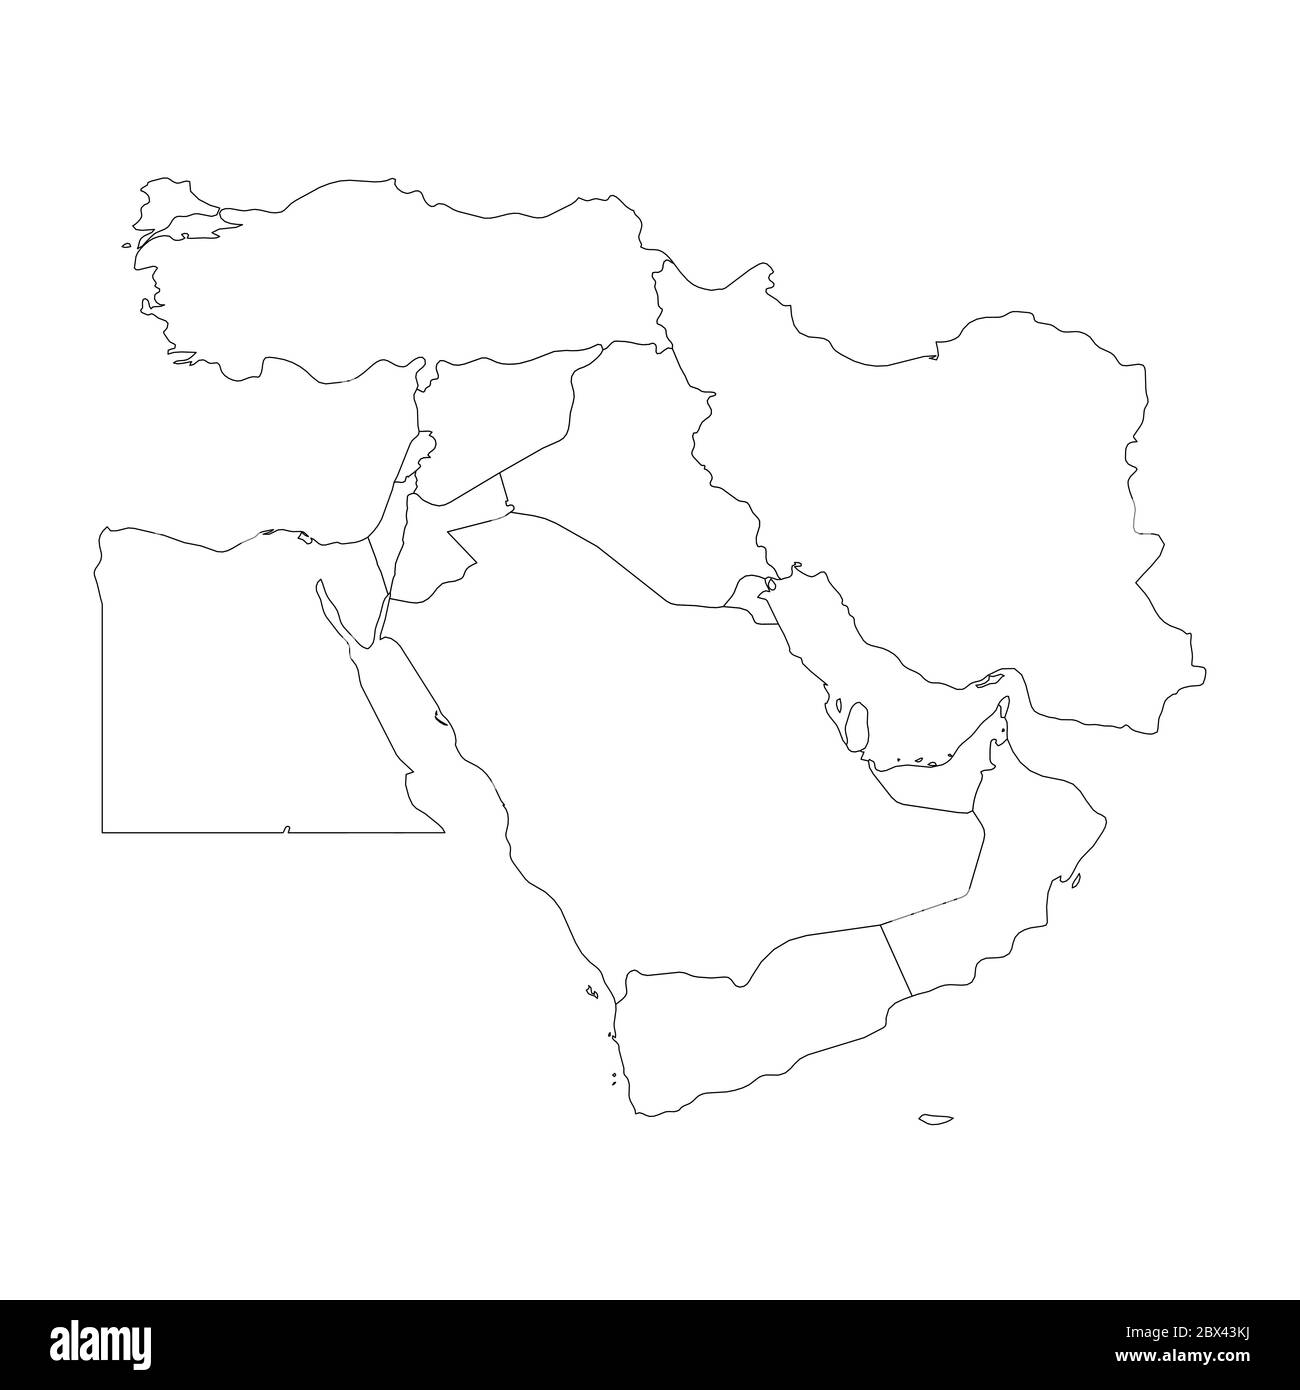 Mappa vuota del Medio Oriente o del Vicino Oriente. Semplice immagine vettoriale a profilo piatto. Illustrazione Vettoriale